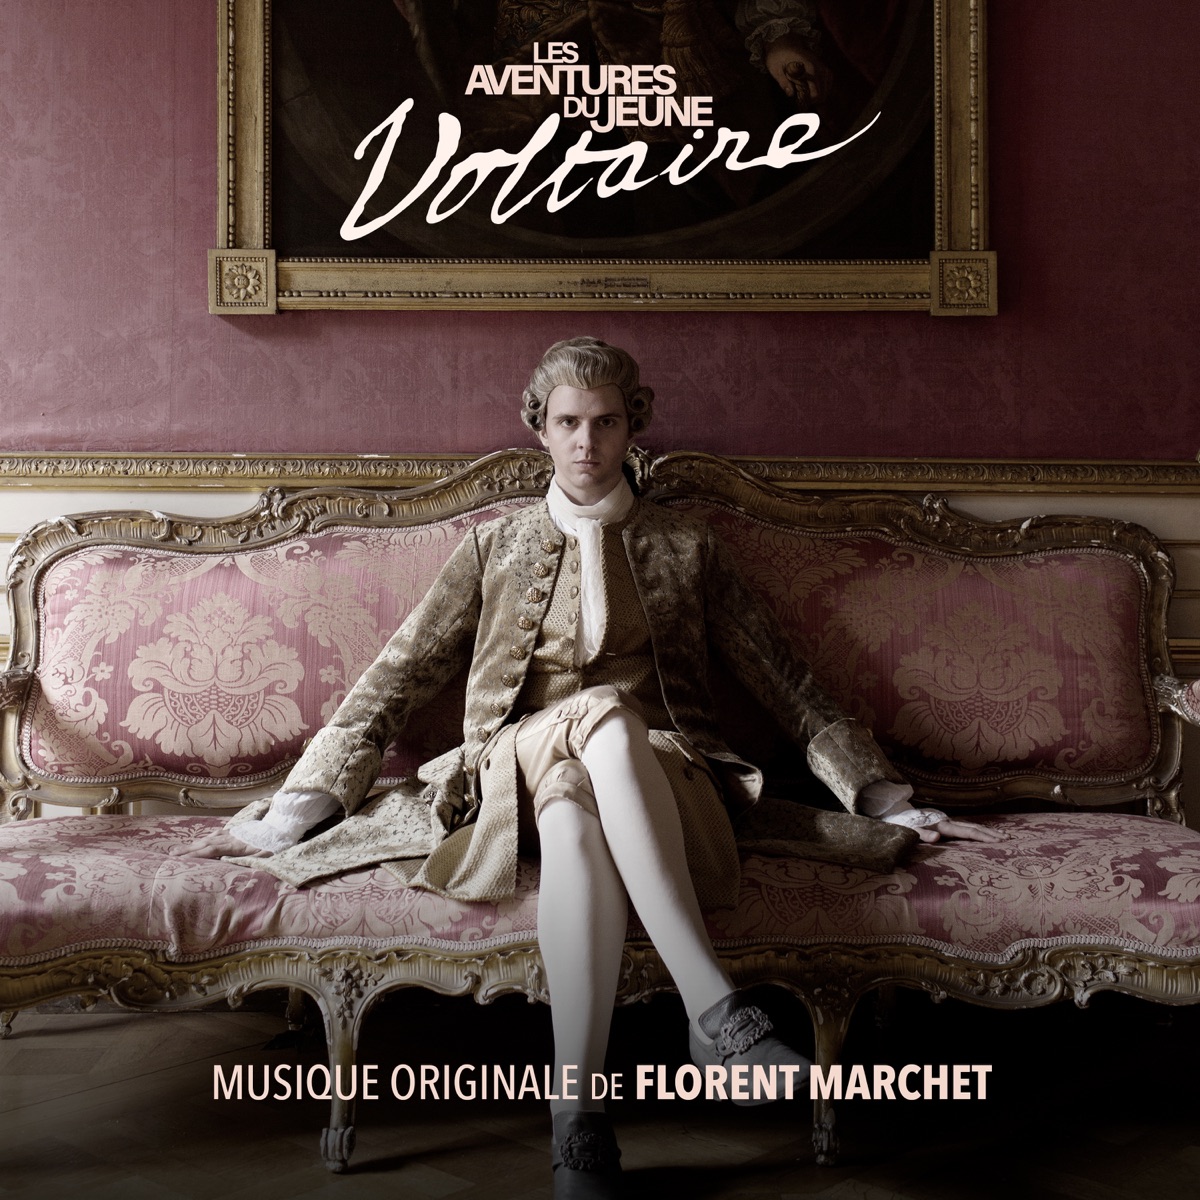 Des hauts, des bas - Single par Florent Marchet & Gaëtan Roussel sur Apple  Music